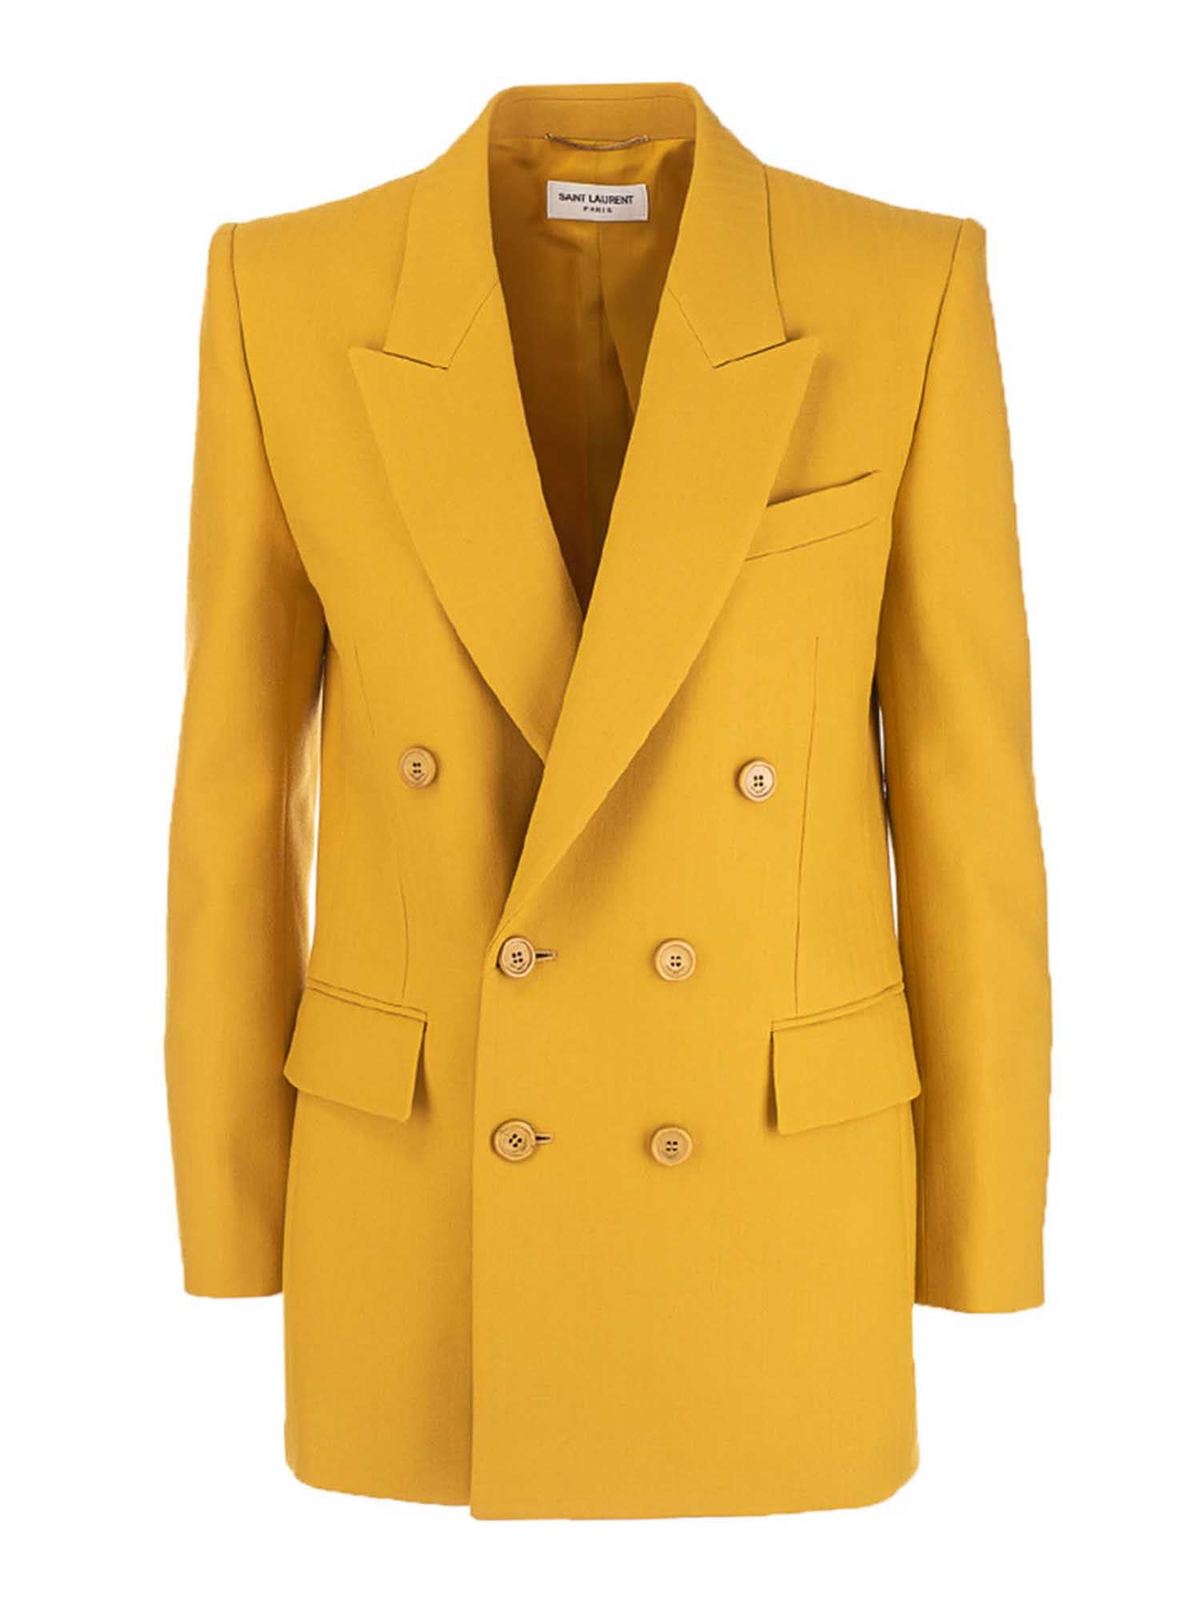 Saint Laurent - Yves jacket in saffron color - blazers - 648656Y7C362142